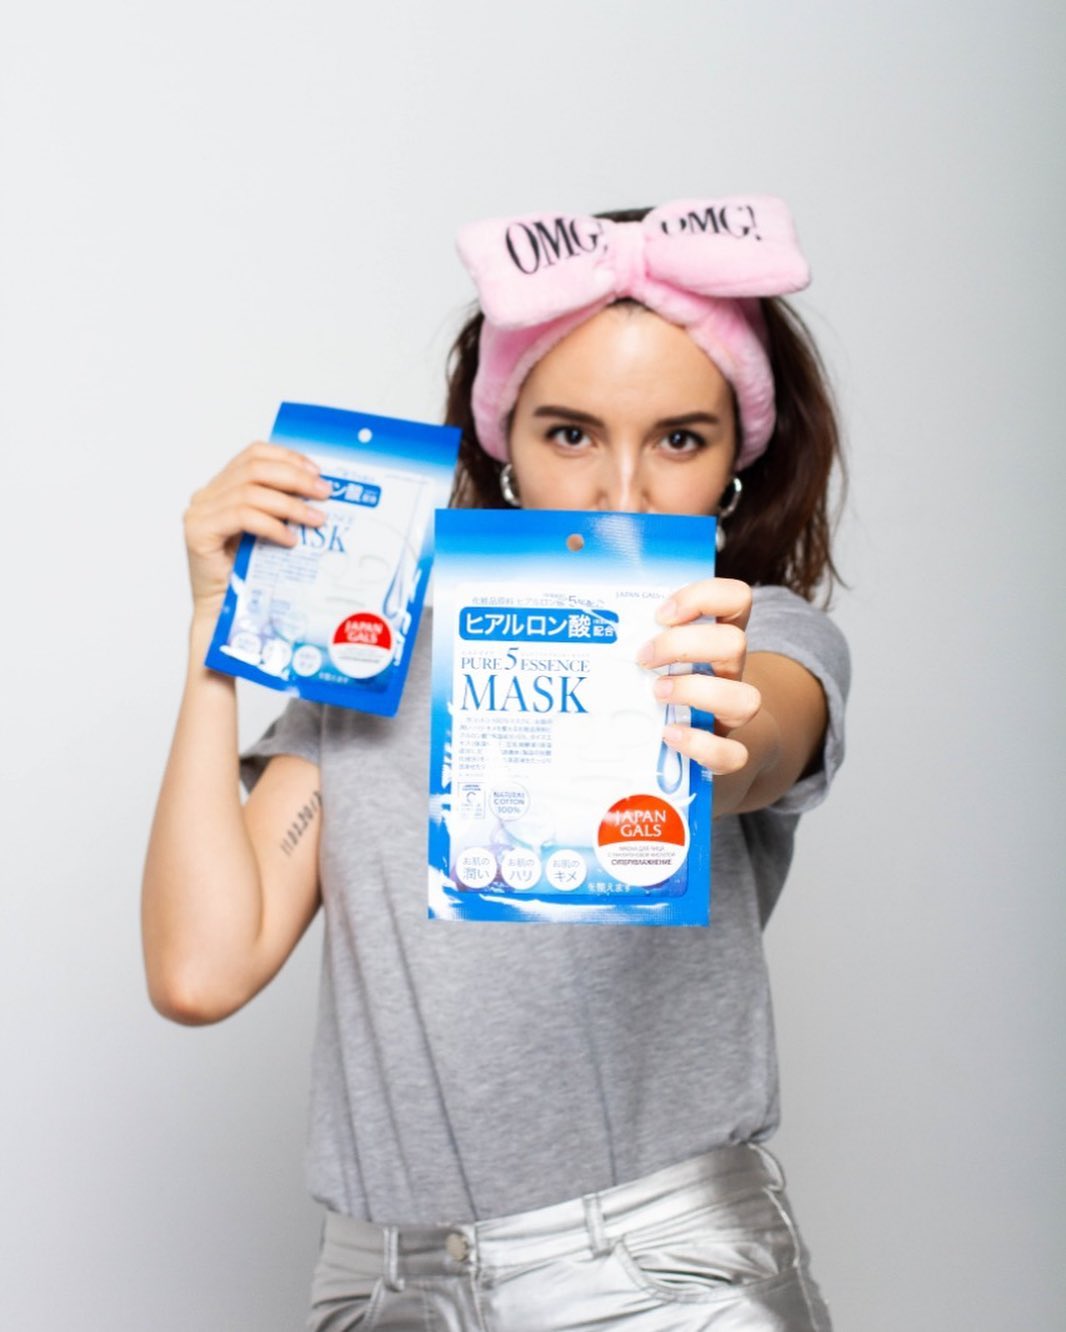 JAPONICA | Японская косметика - Наш бестселлер - маски с гиалуроновой кислотой #JapanGals 💙
⠀
Именно с них мы рекомендуем начинать знакомство с тканевыми масками. На это есть несколько причин: формат...